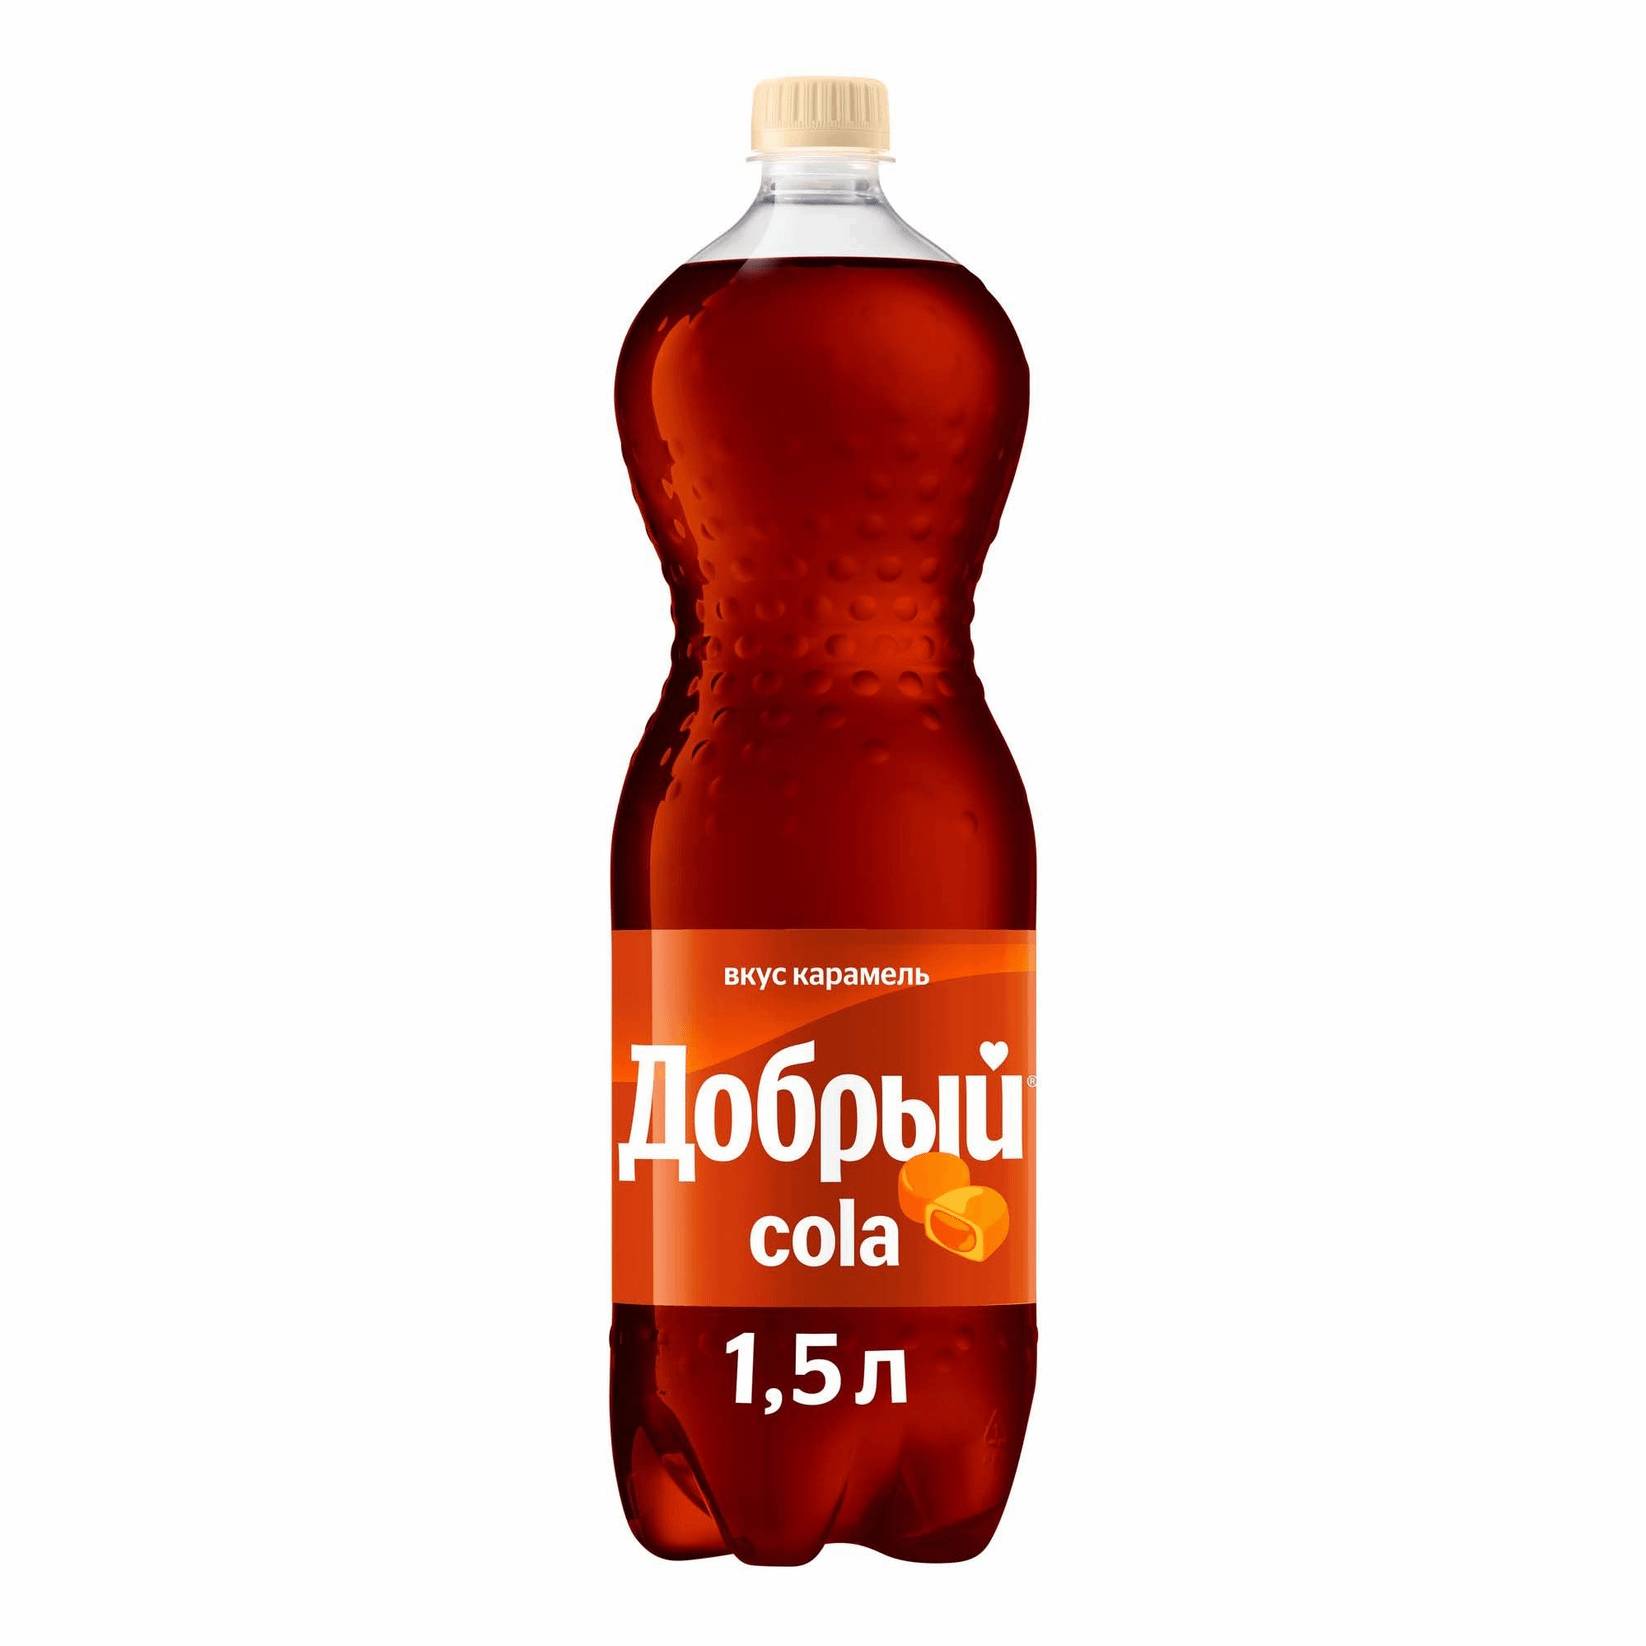 Напиток Добрый Cola карамель 1,5 л напиток волчок cola 0 33 литра газ ж б 24 шт в уп